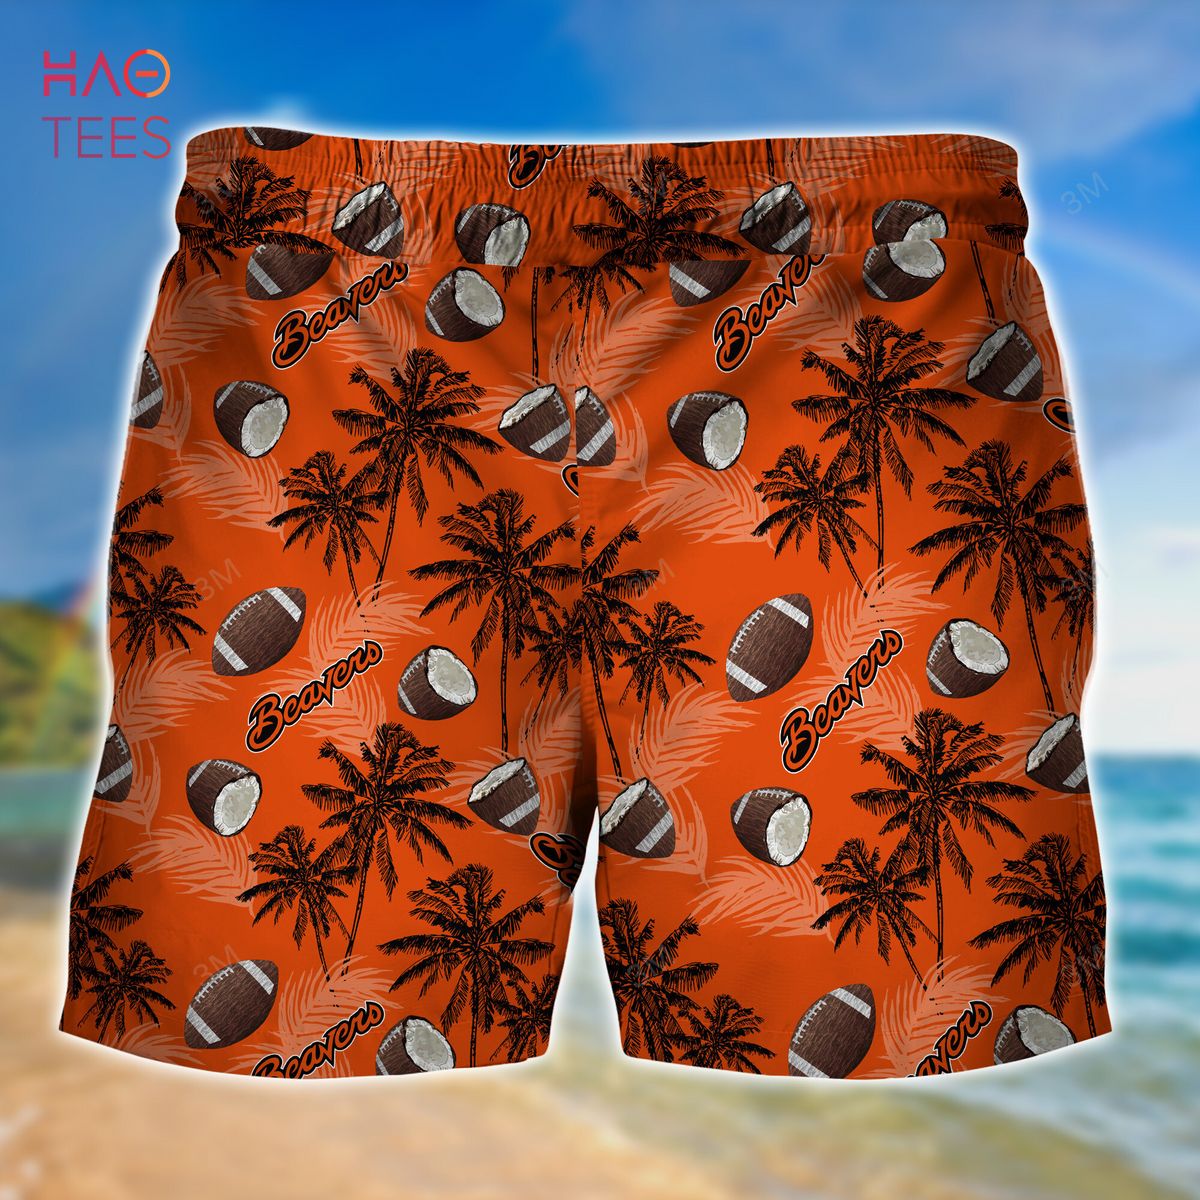 Colorado Rockies Vintage Sea Island Pattern Hawaiian Shirt And Shorts Gift  For Summer